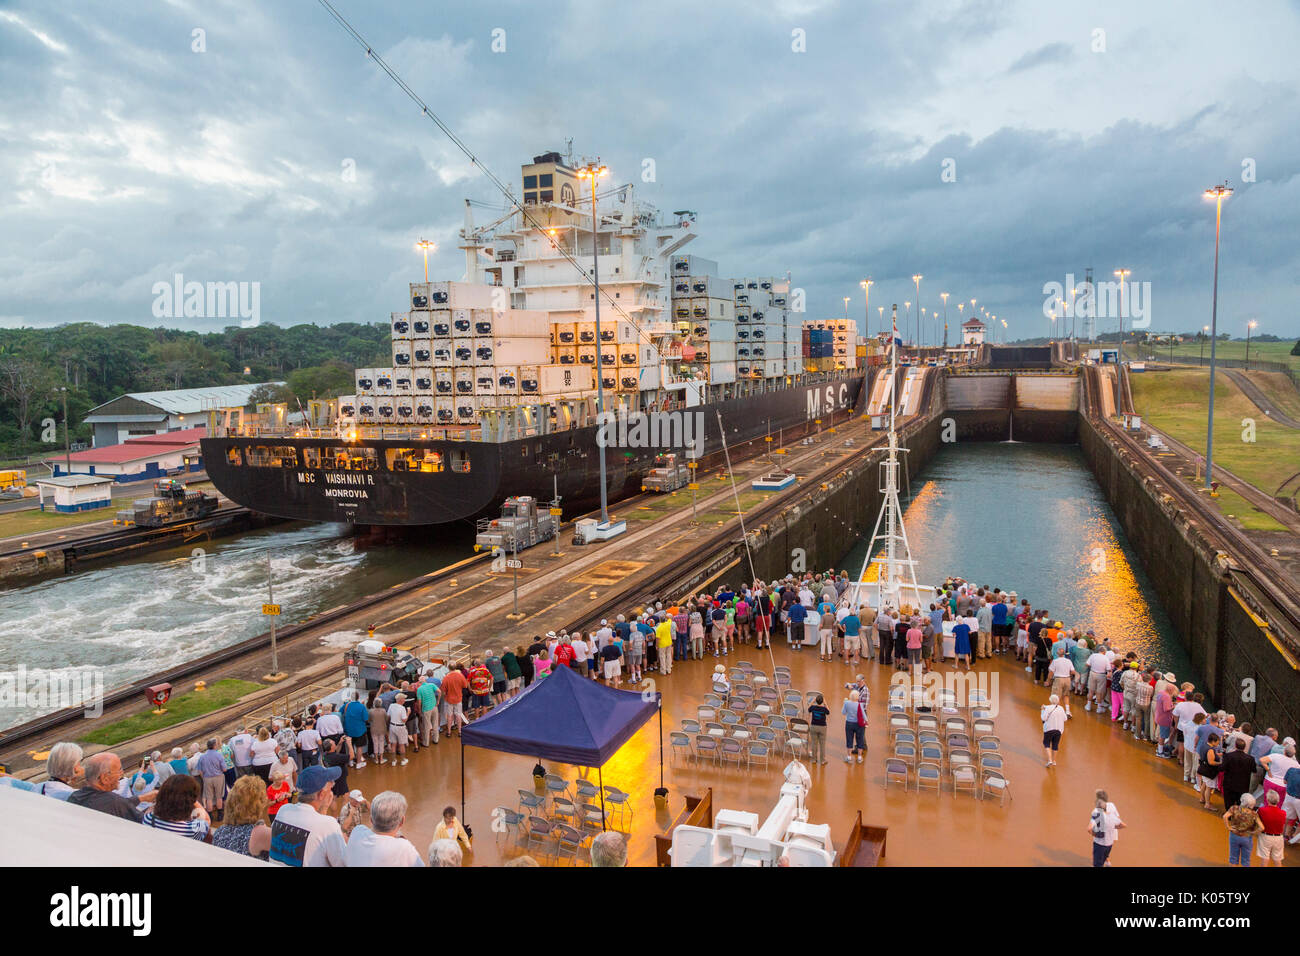 Canale di Panama, Panama. Contenitore nave entrando nel primo blocco, Caraibi, dirigendosi verso il Lago di Gatun, i passeggeri sulla nave da crociera a guardare. Foto Stock